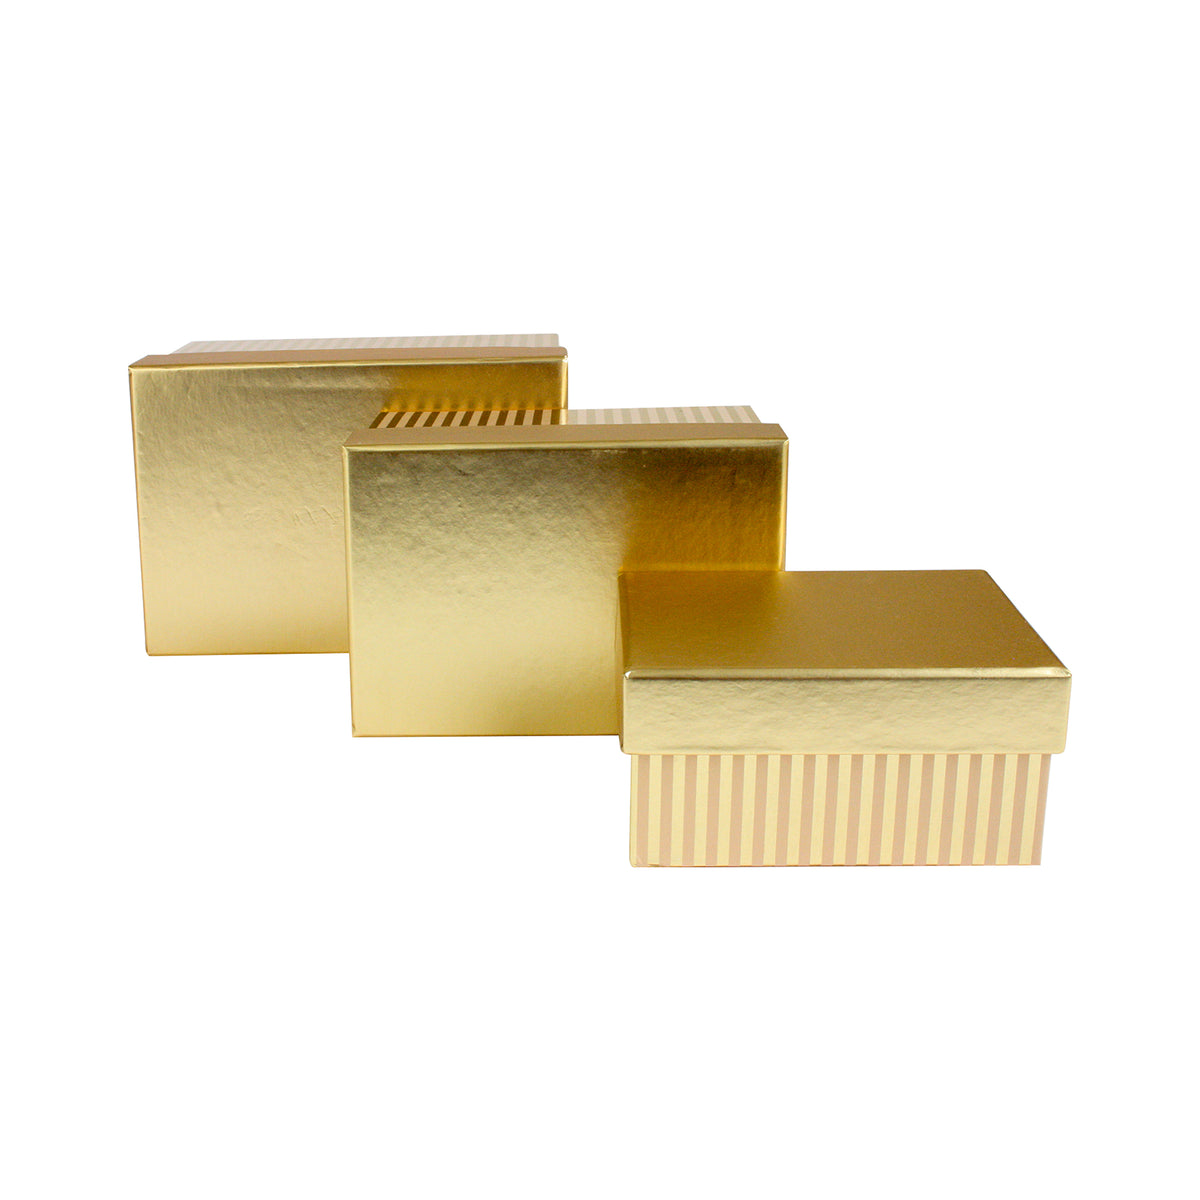 Set of 3 Metallic Gold Stripes Gift Boxes